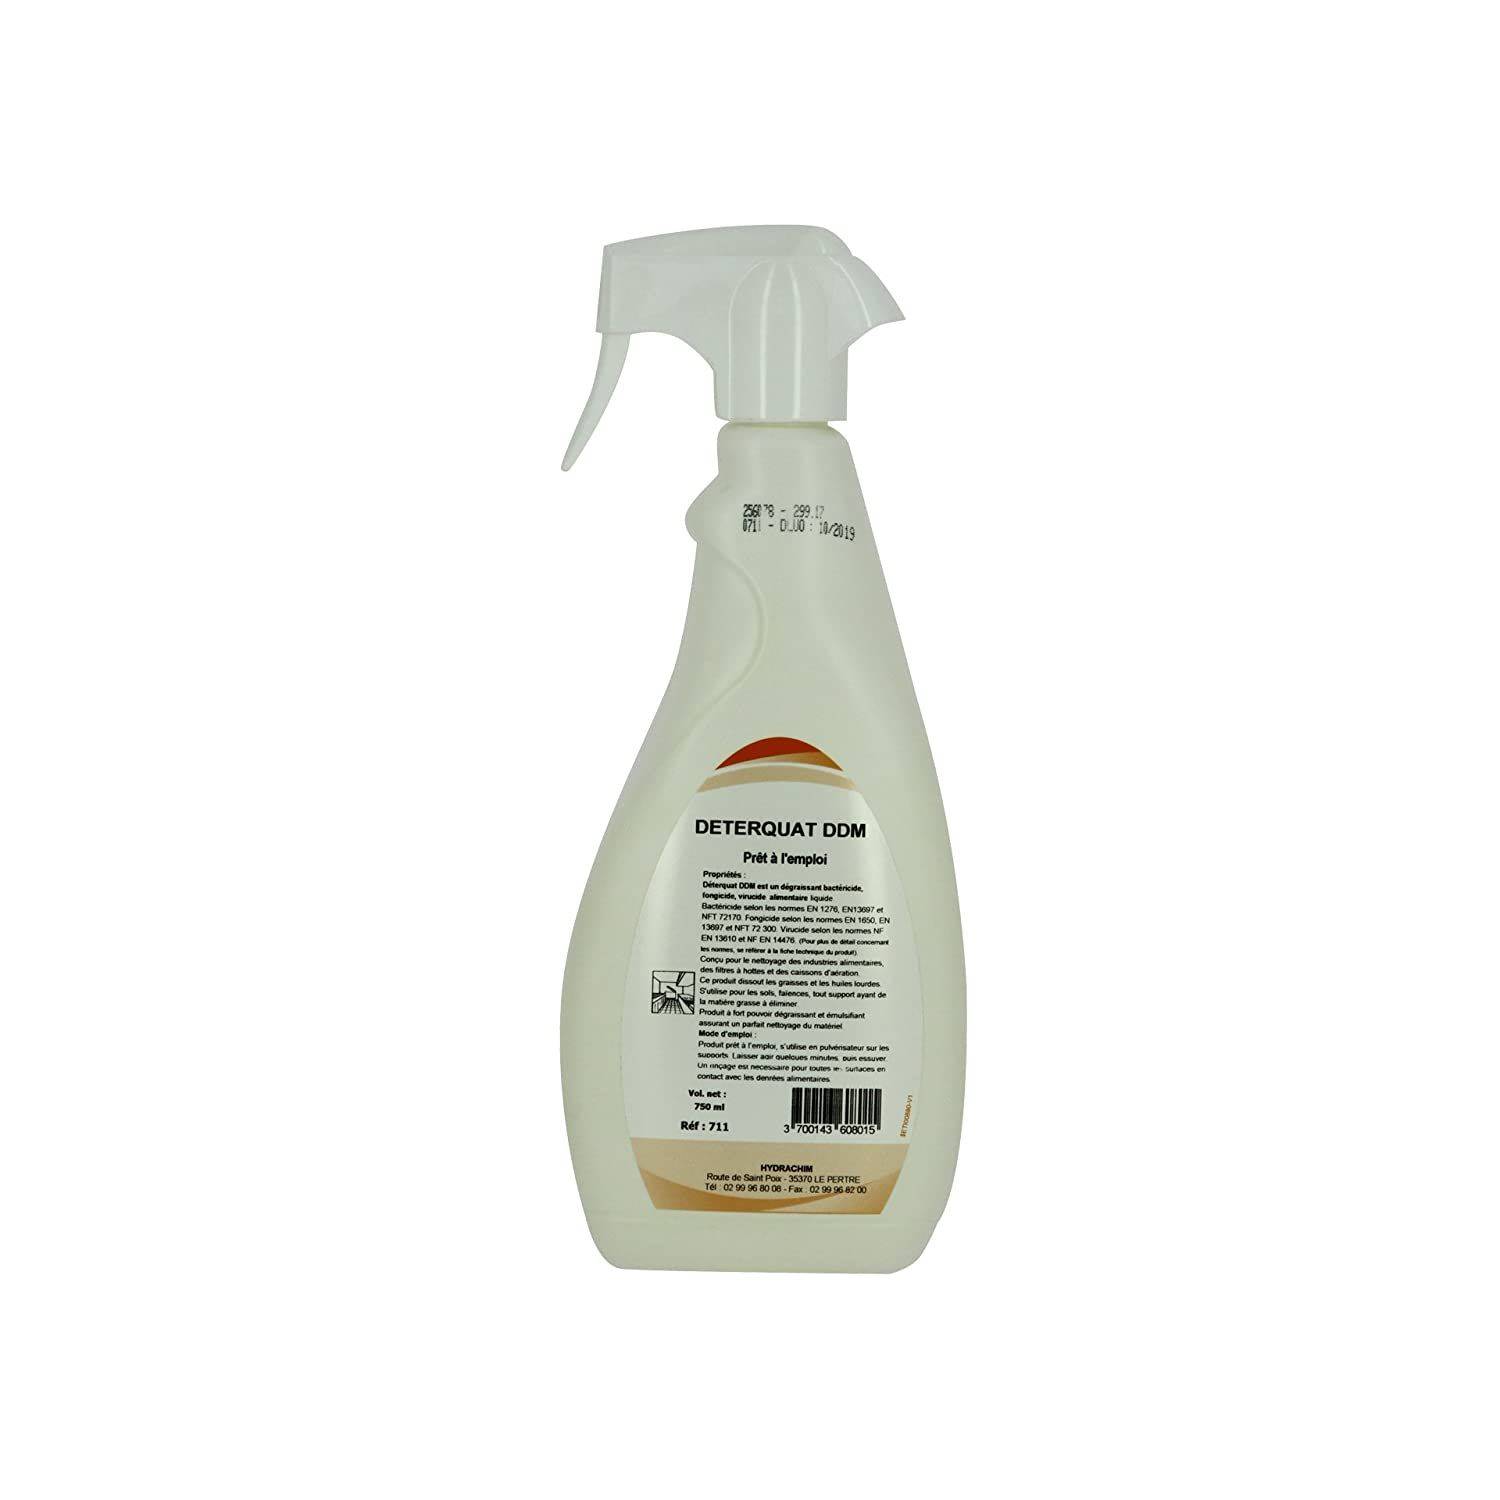 Super dégraissant désinfectant PAE DETERQUAT DDM 711 - Spray 750ml